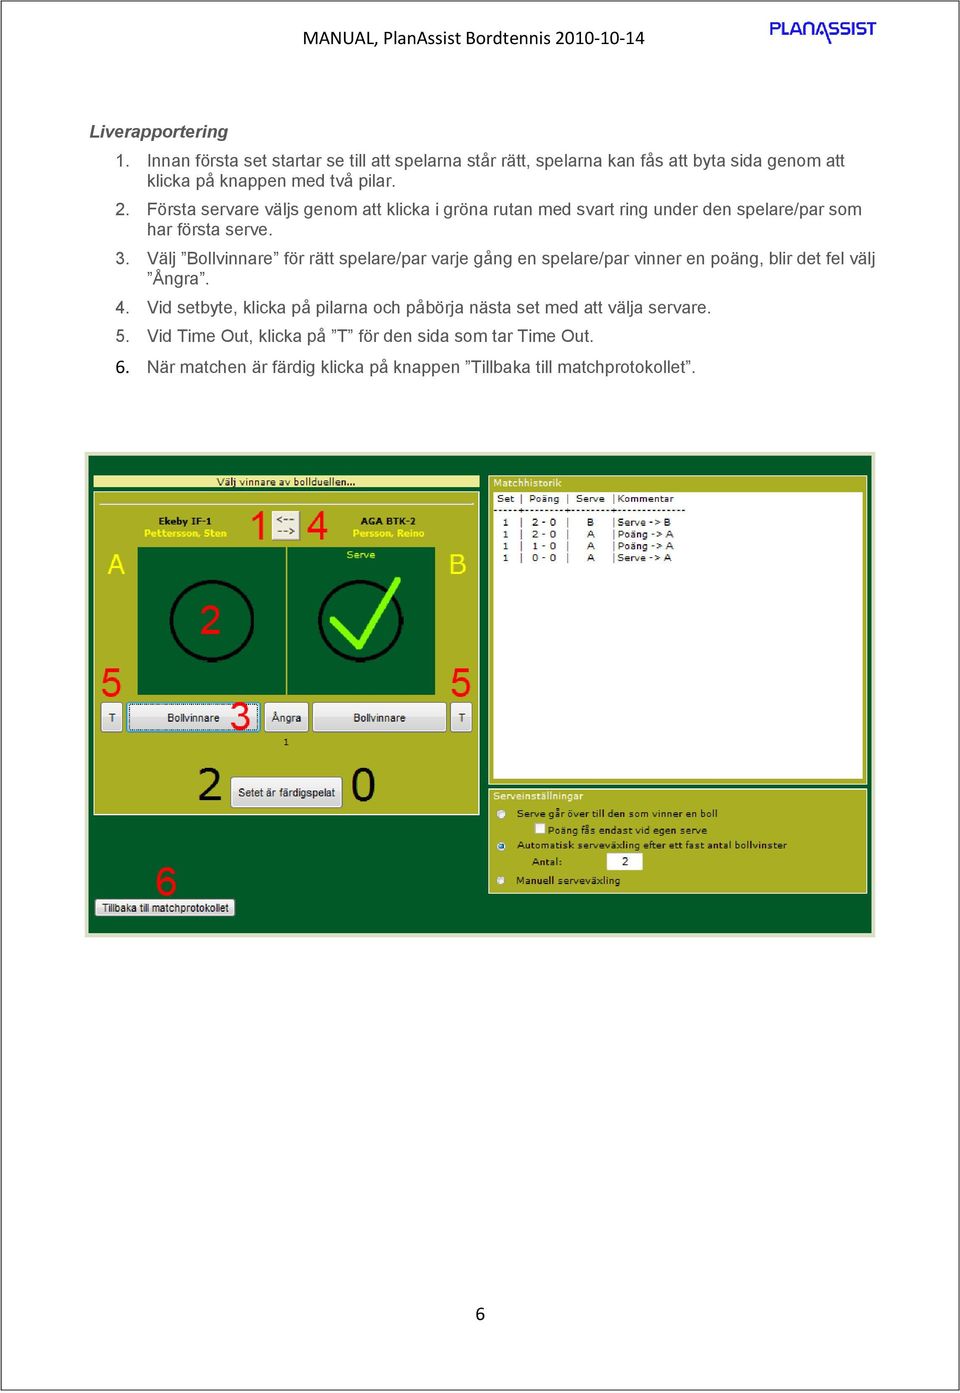 Första servare väljs genom att klicka i gröna rutan med svart ring under den spelare/par som har första serve. 3.